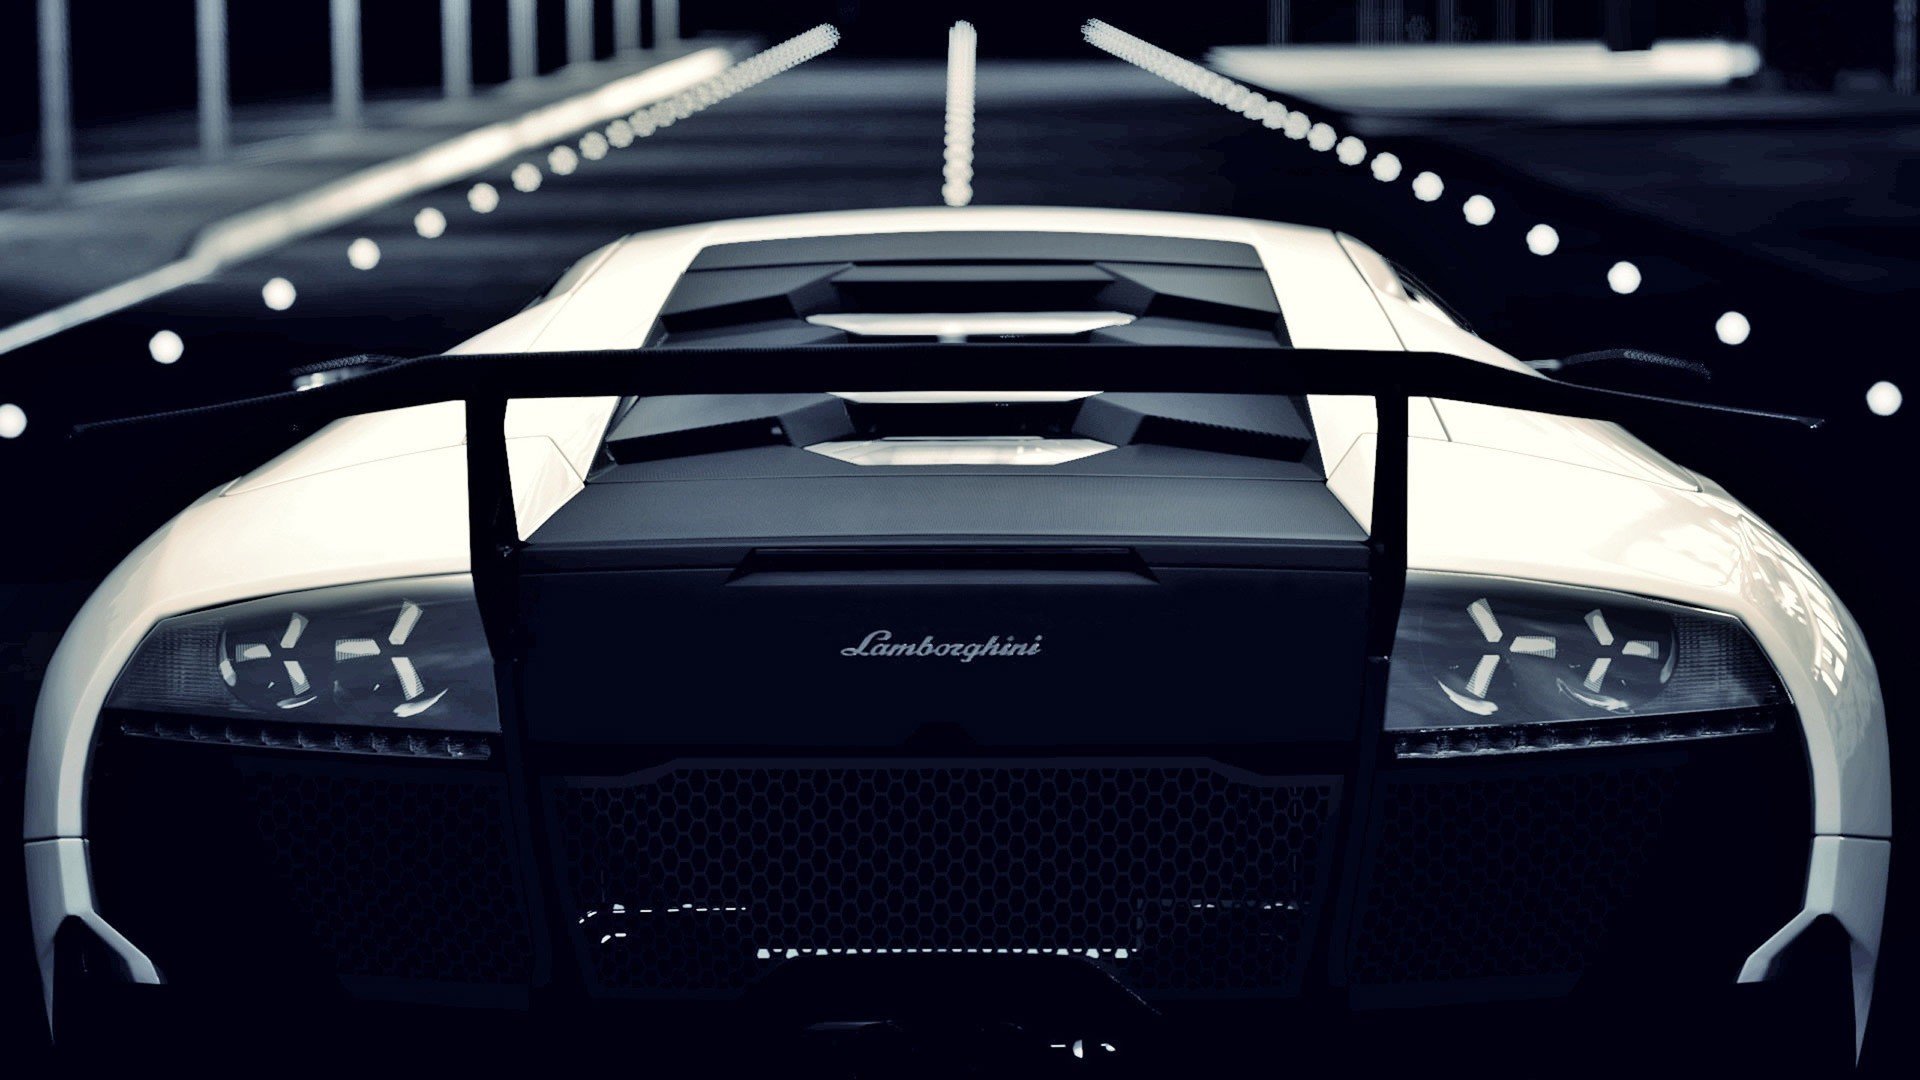 Wallpaper Lamborghini Murcielago Black and White